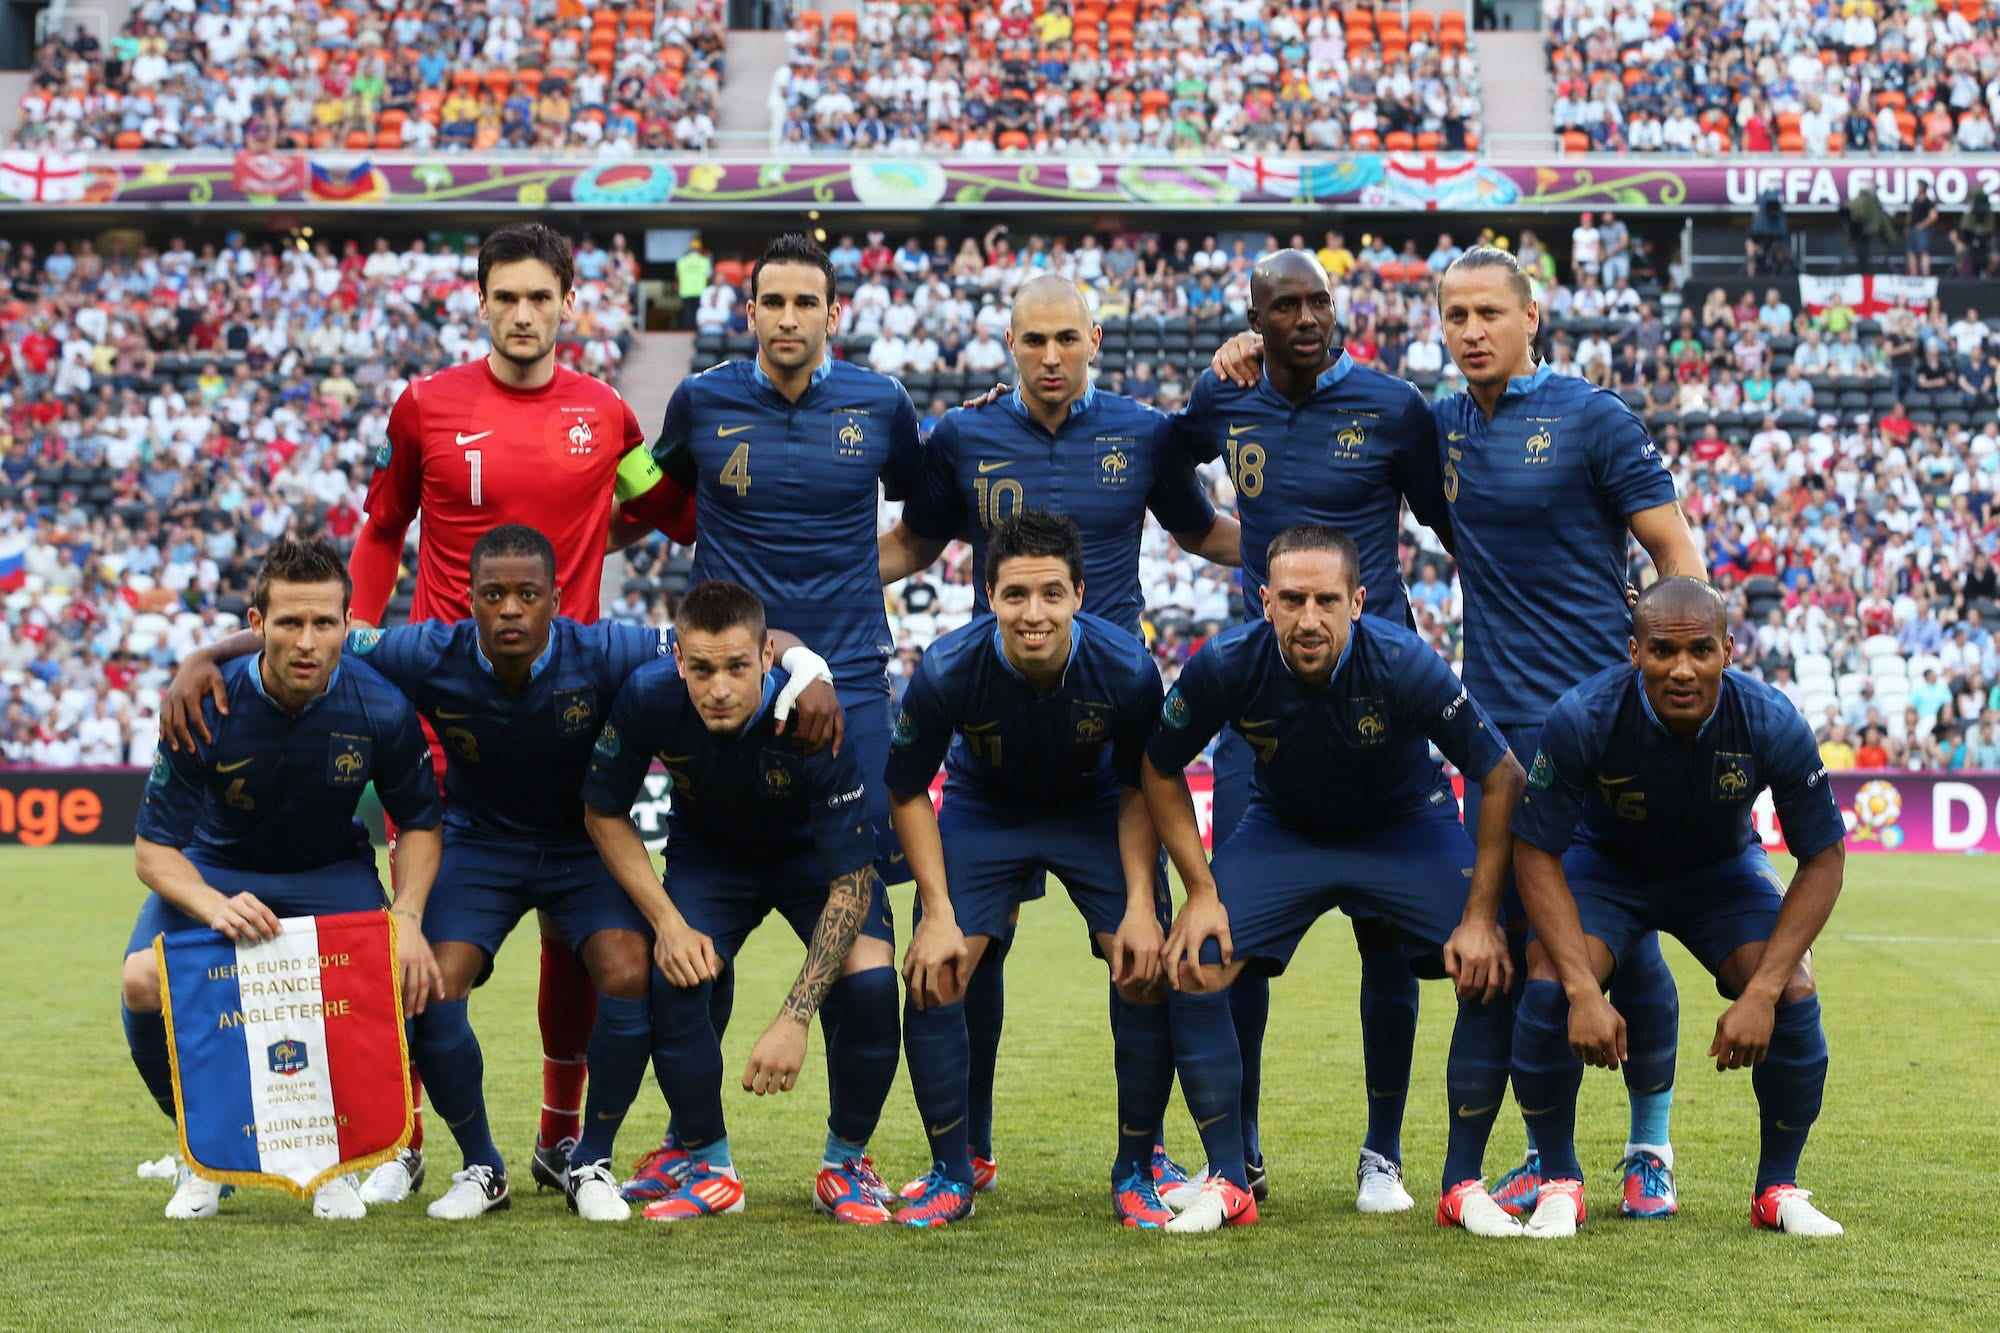 Die französische Mannschaft stellt sich während des Spiels der Gruppe D der UEFA EURO 2012 zwischen Frankreich und England in der Donbass Arena auf.